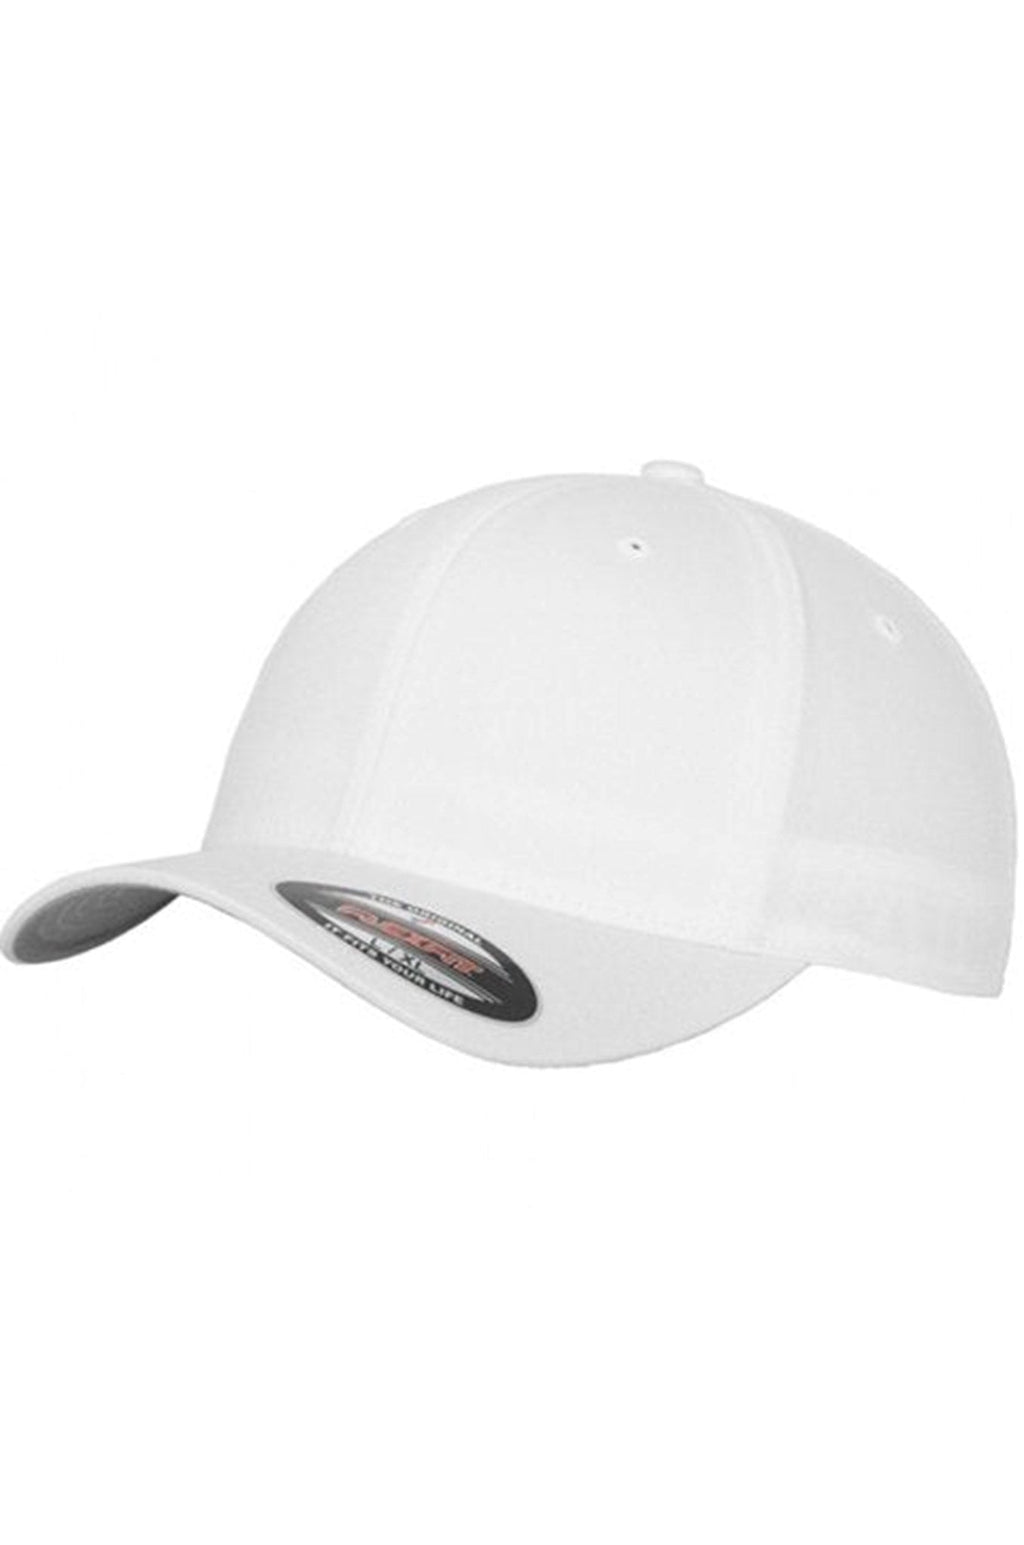 Originálna baseballová čiapka FlexFit - biela